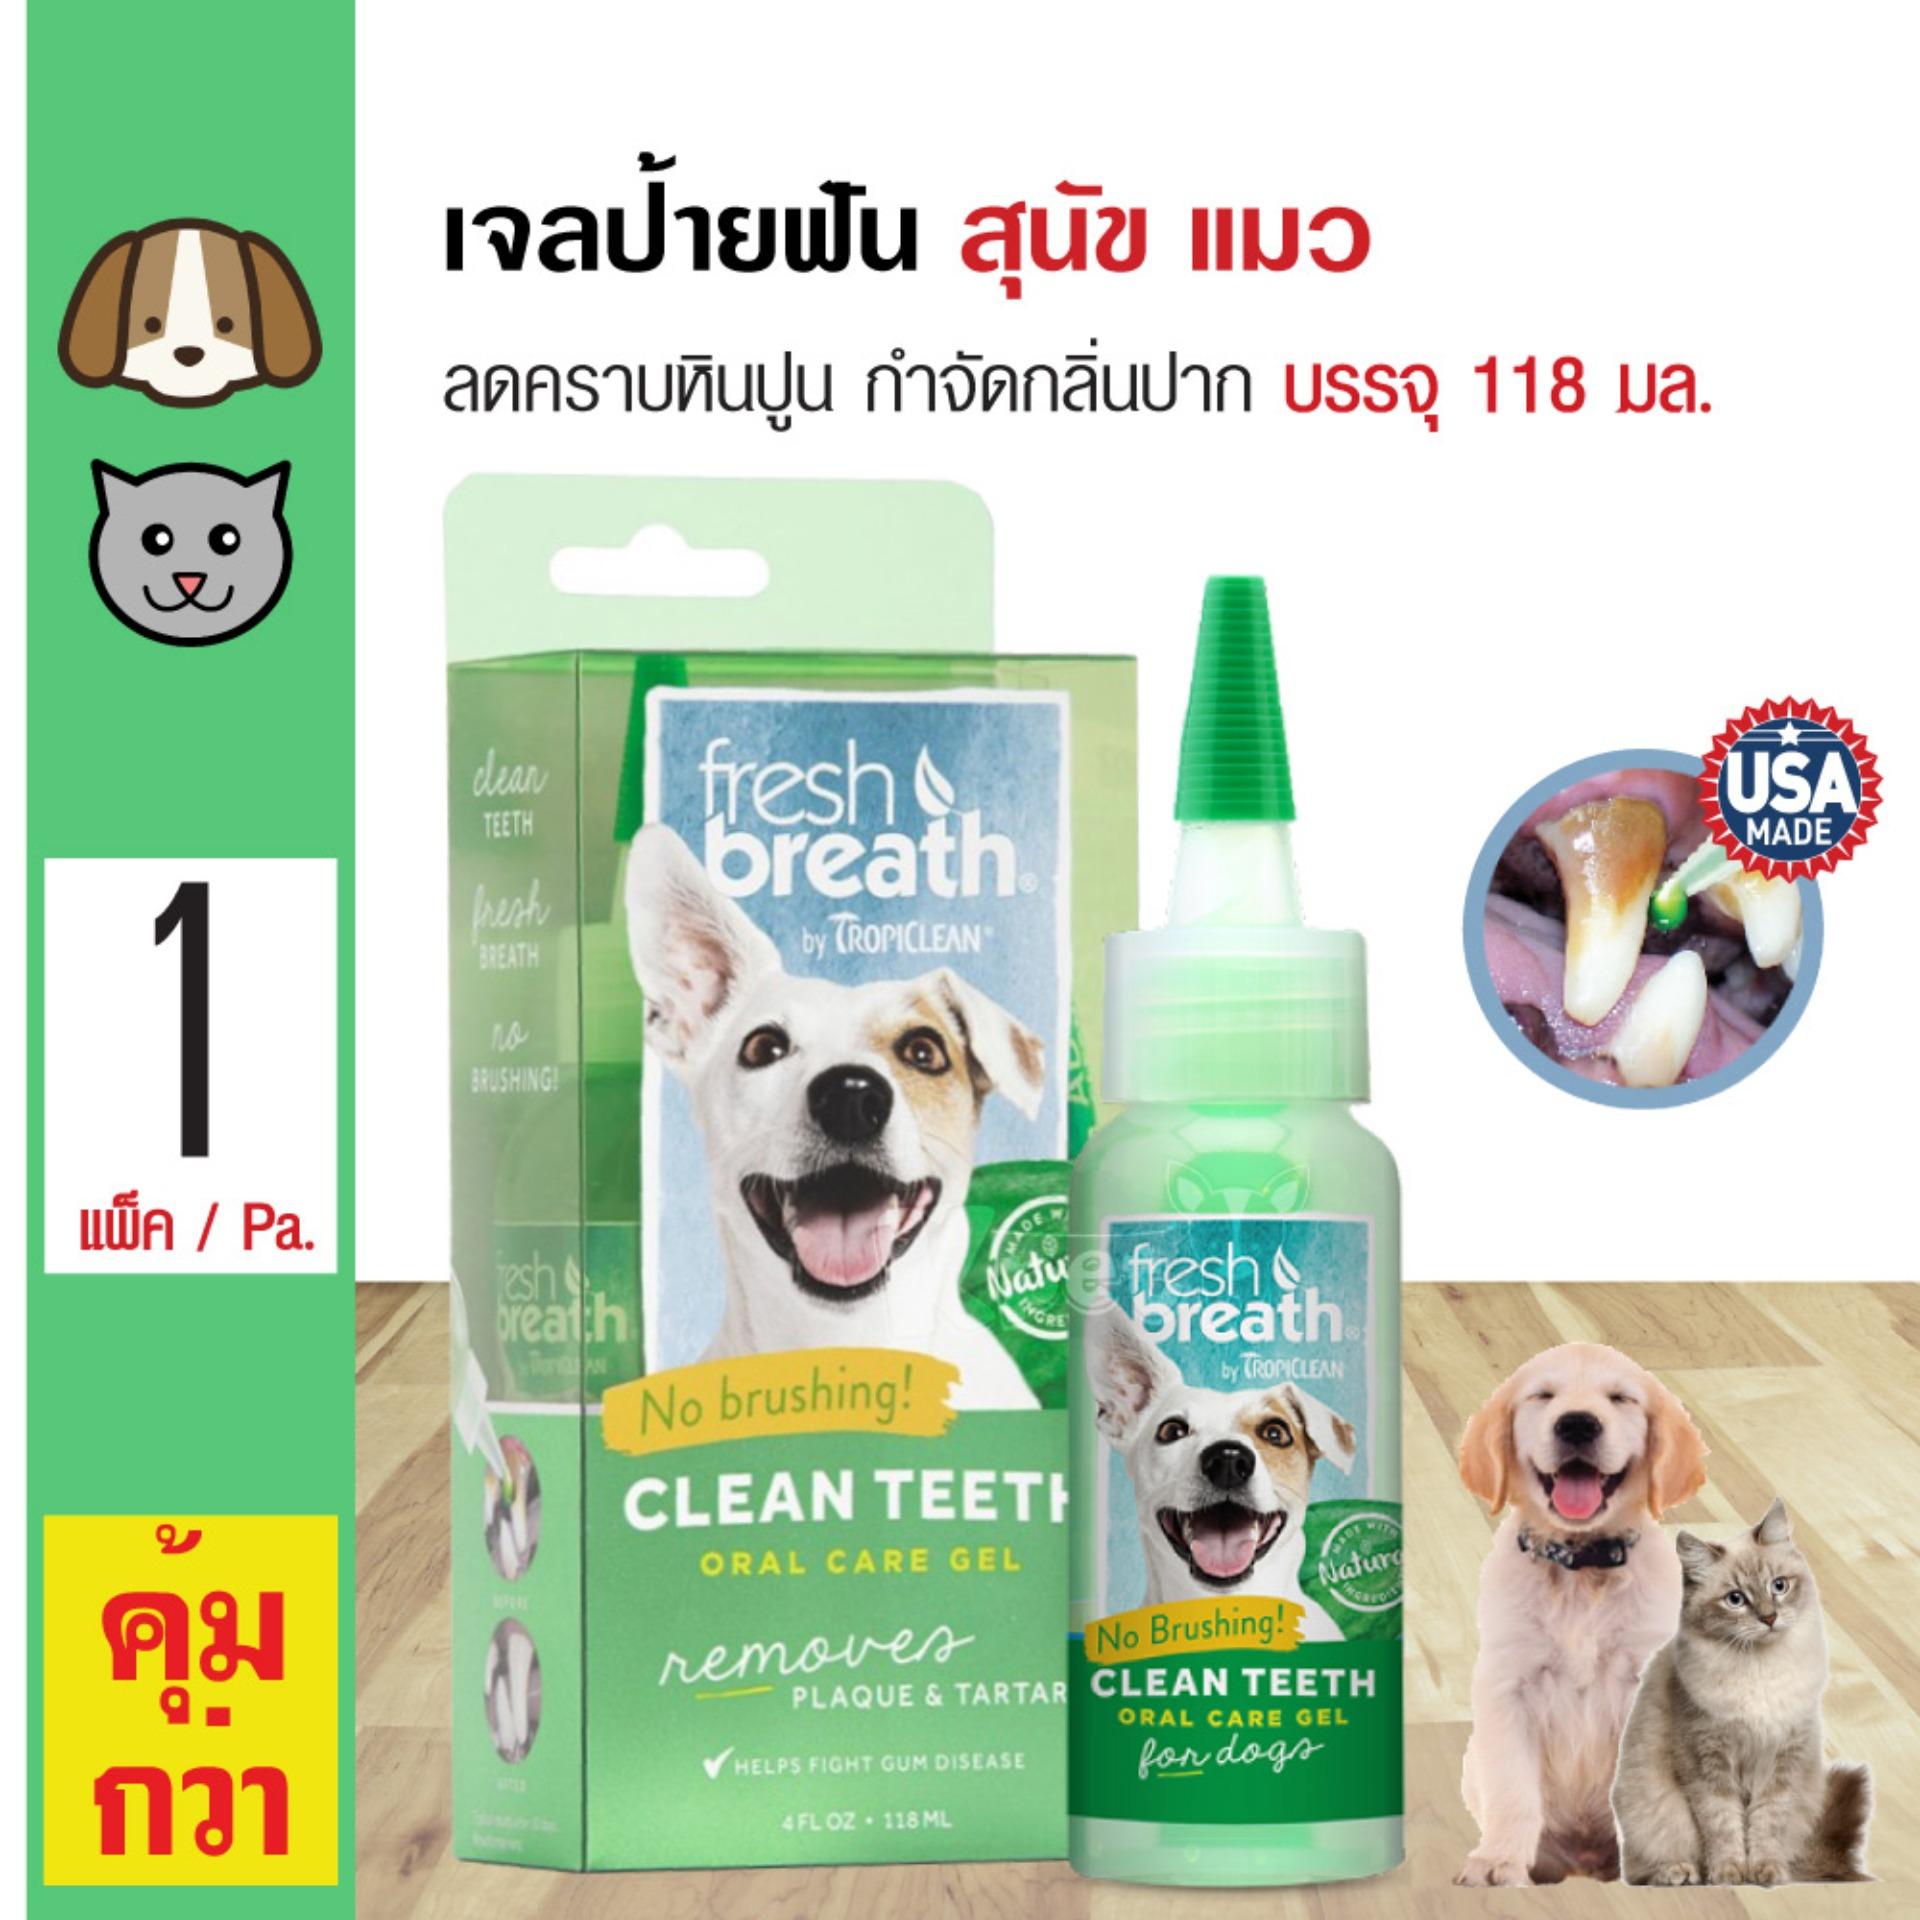 Tropiclean Fresh Breath เจลป้ายฟันสุนัข สูตรดั้งเดิม ลดคราบหินปูน ลดกลิ่นปาก สำหรับสุนัขและแมว (118 มล./ขวด)